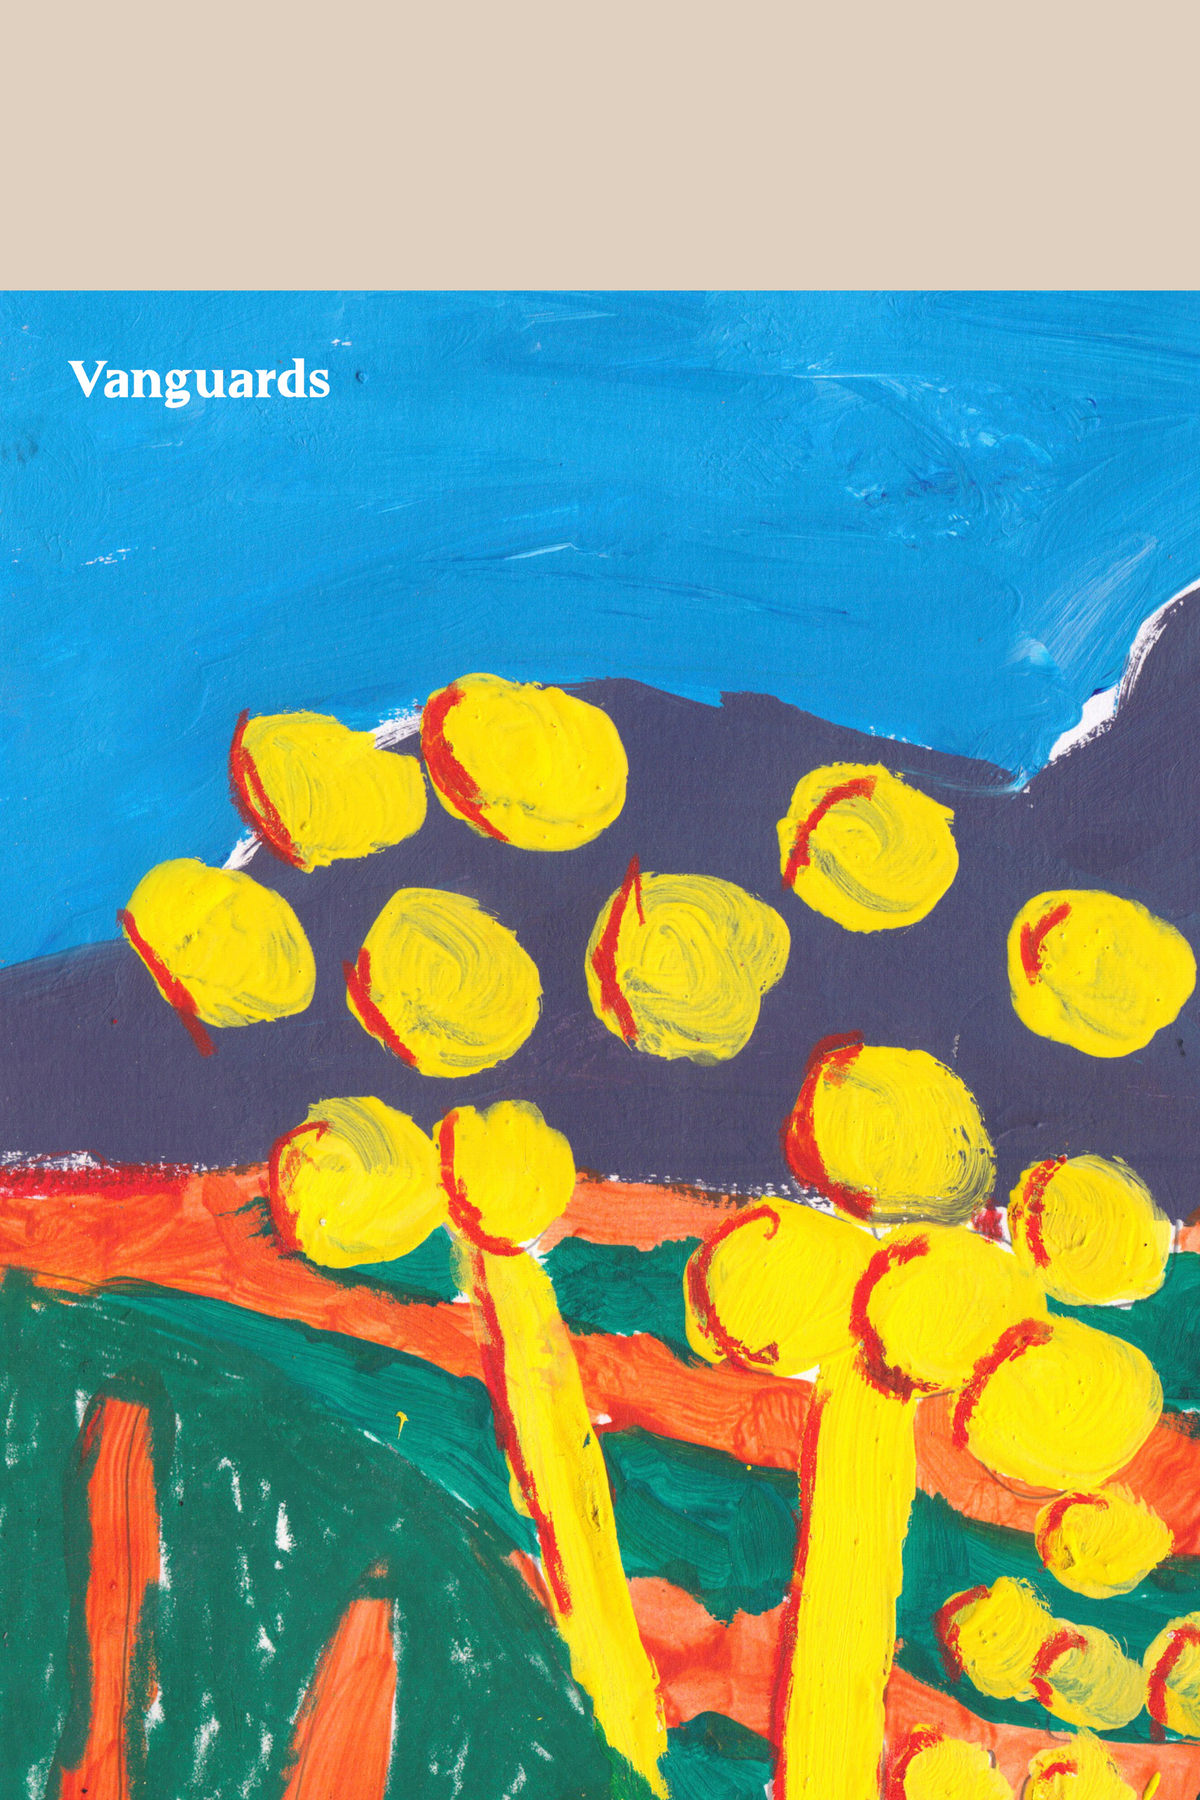 Vanguards Issue 2